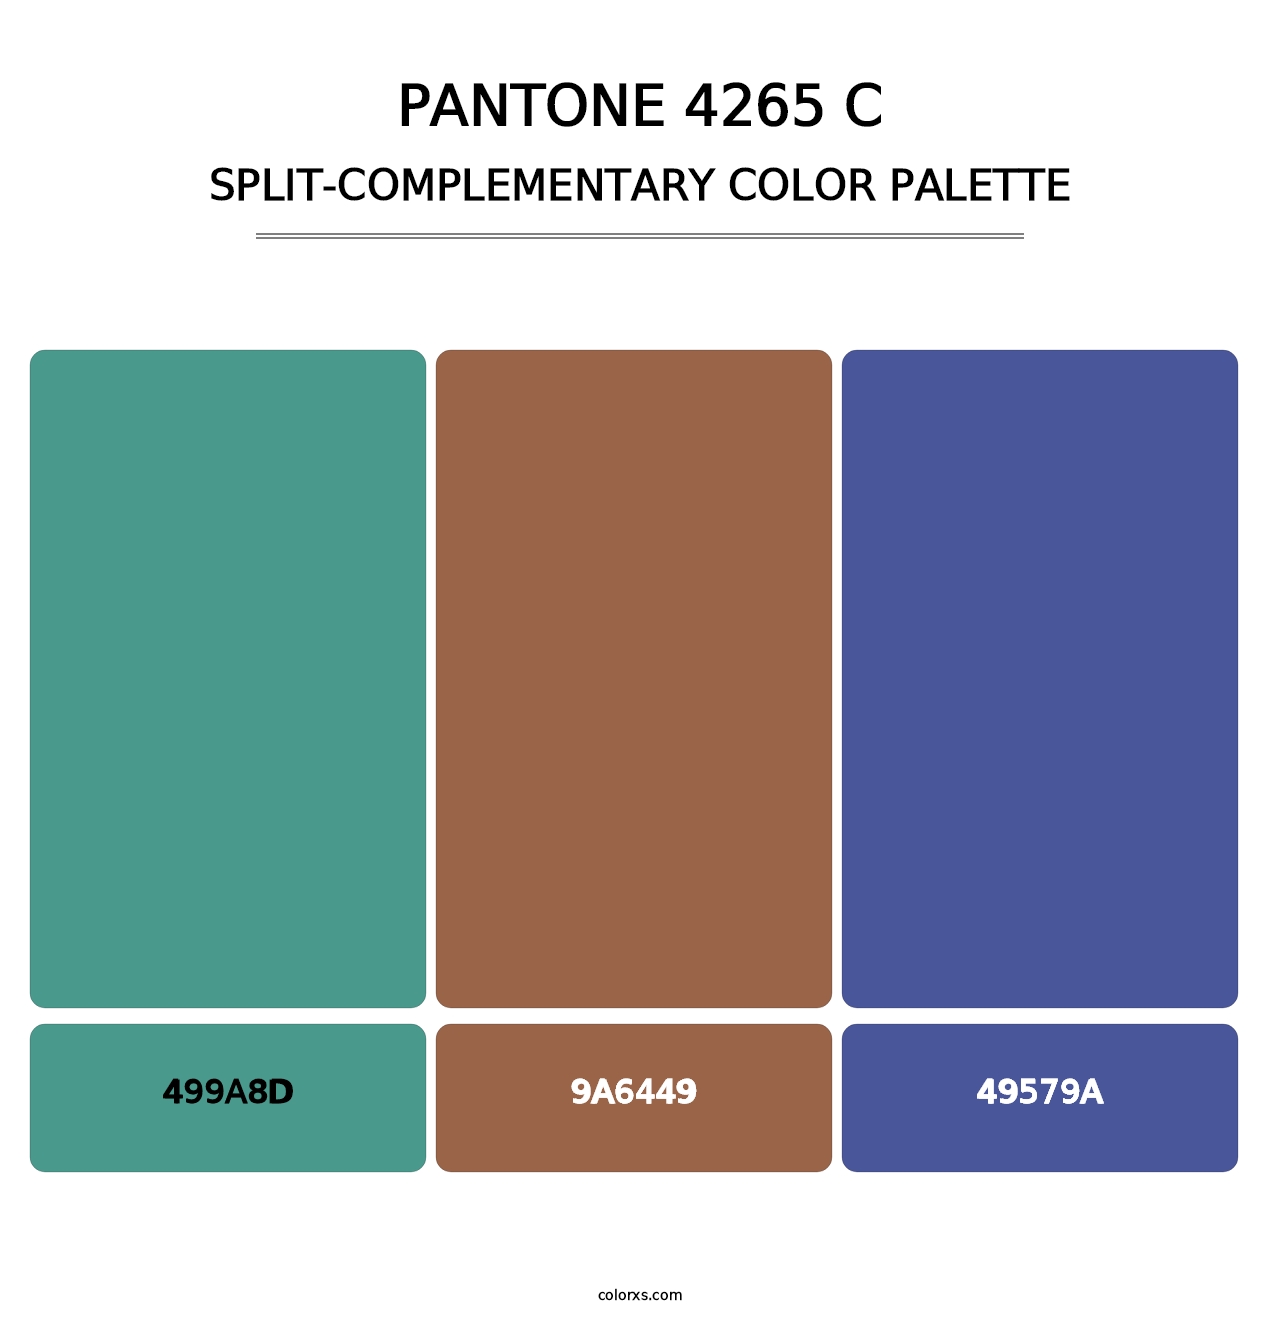 PANTONE 4265 C - Split-Complementary Color Palette